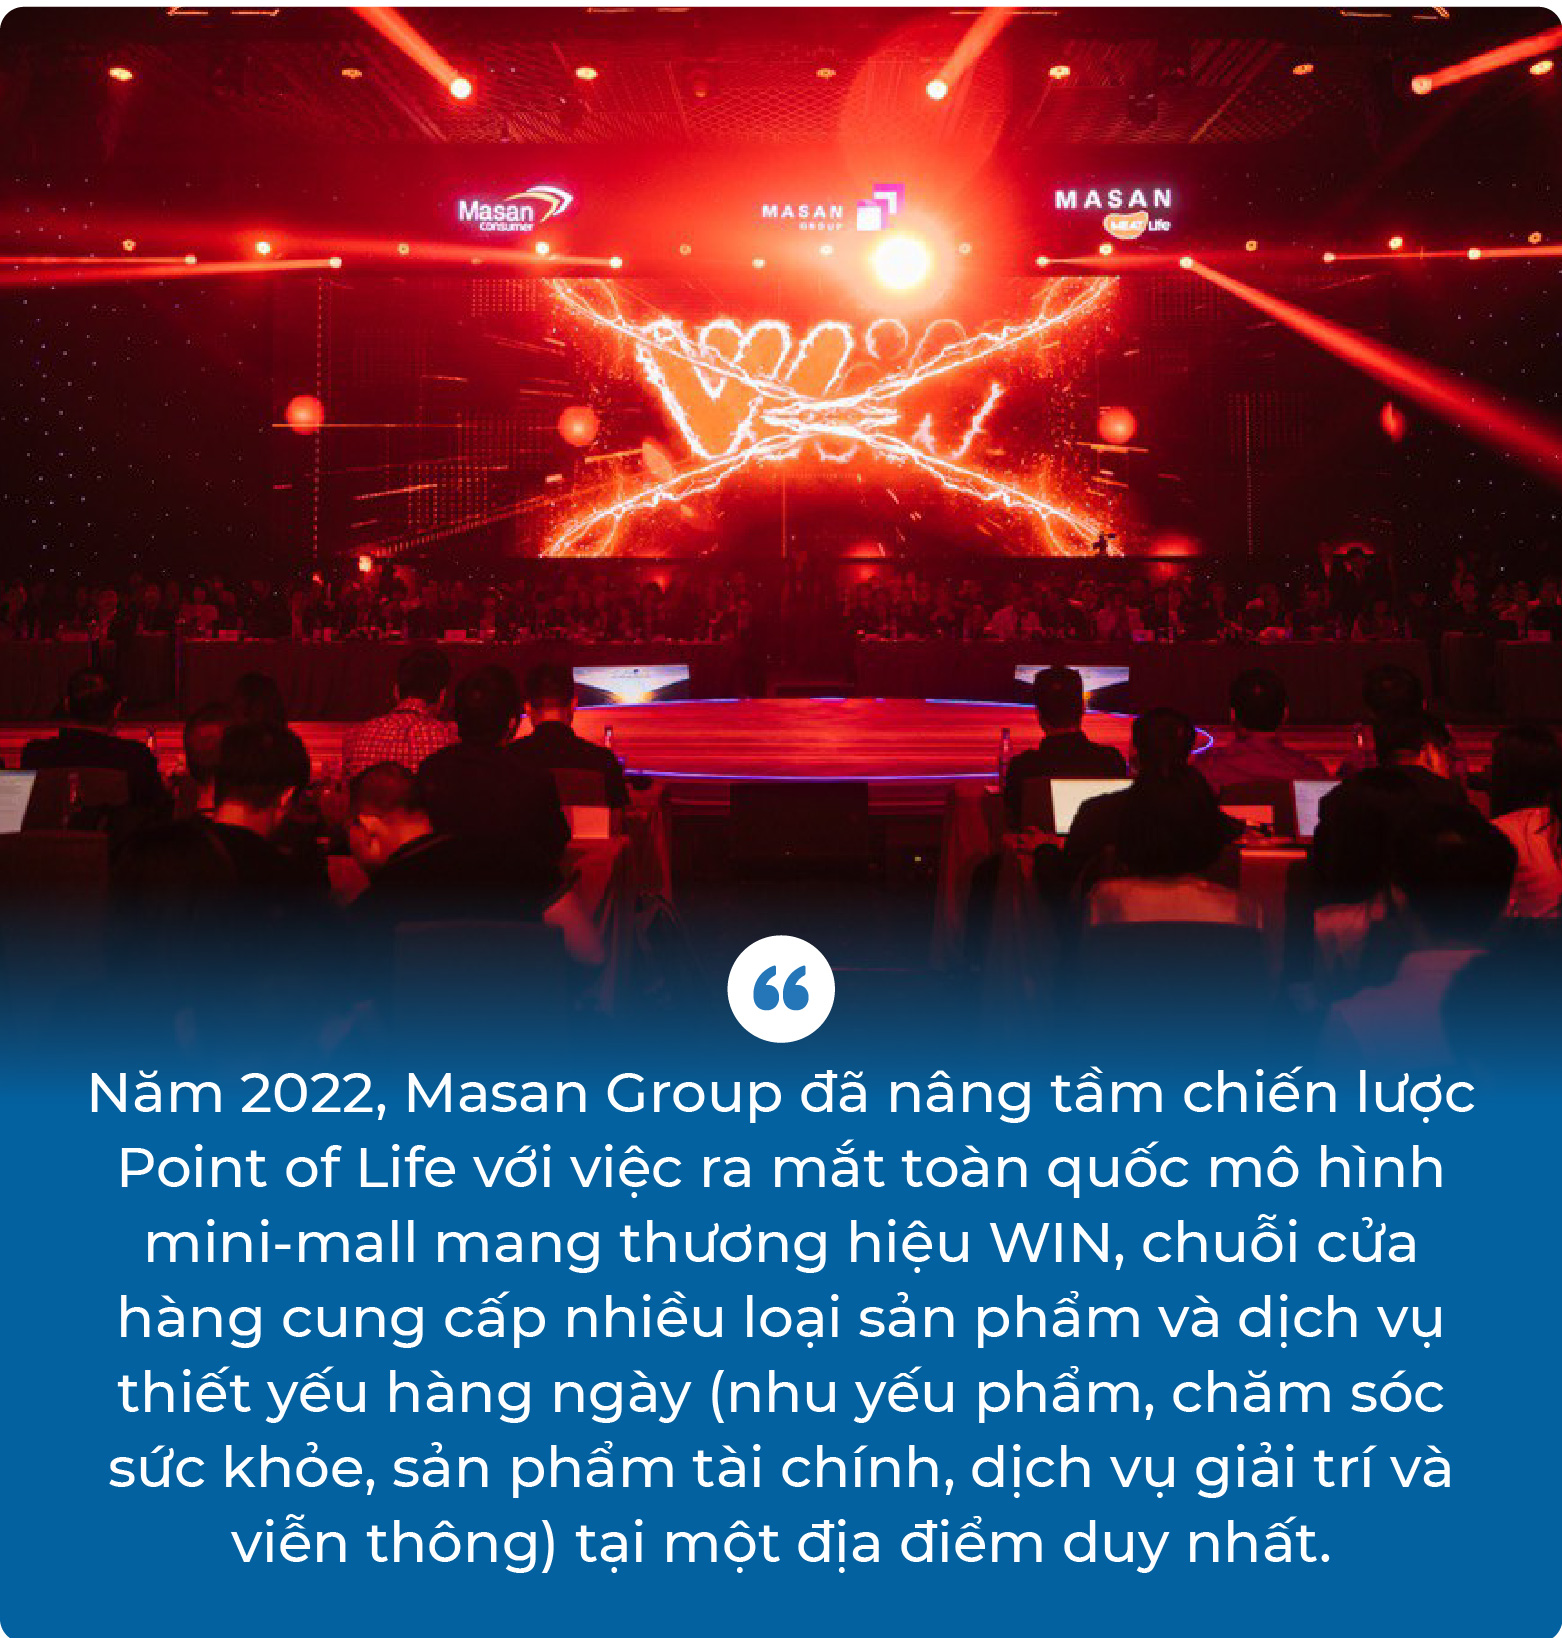 Vì sao Masan Group là đơn vị top đầu về sự đầu tư cho Đại hội cổ đông thường niên? - Ảnh 4.